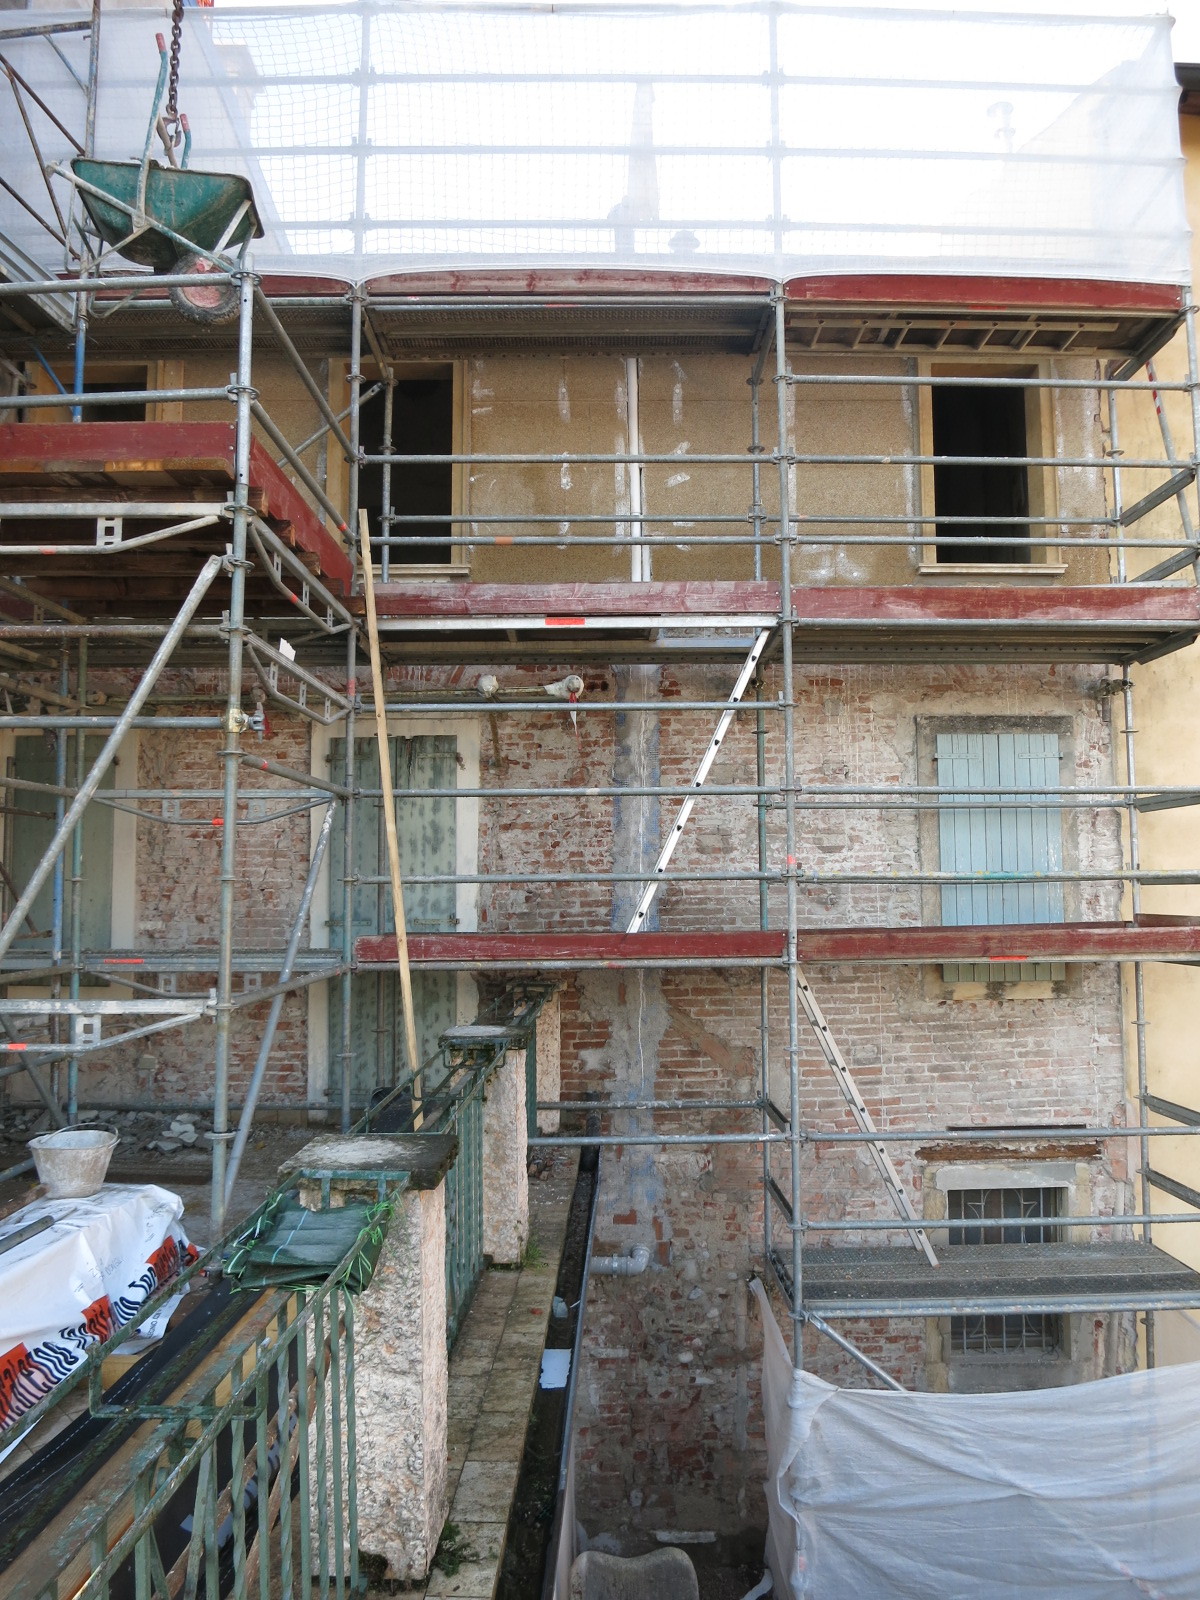 Intervento di ristrutturazione su facciata esistente con calce e canapa